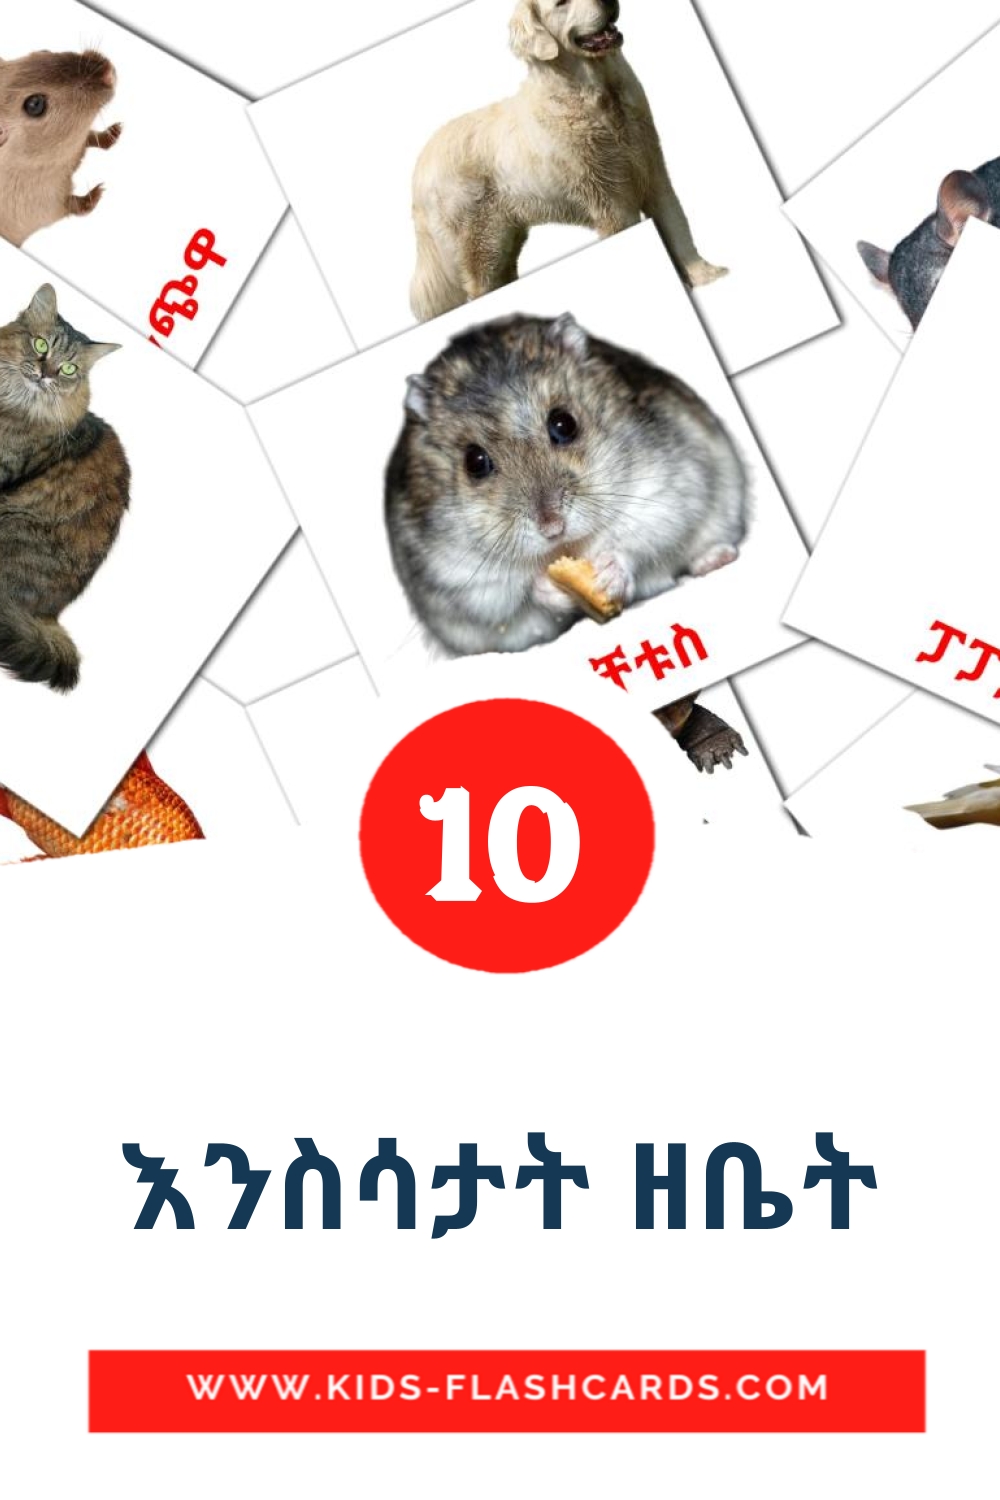 10 Cartões com Imagens de እንስሳታት ዘቤት para Jardim de Infância em tigrigna(eritreia)